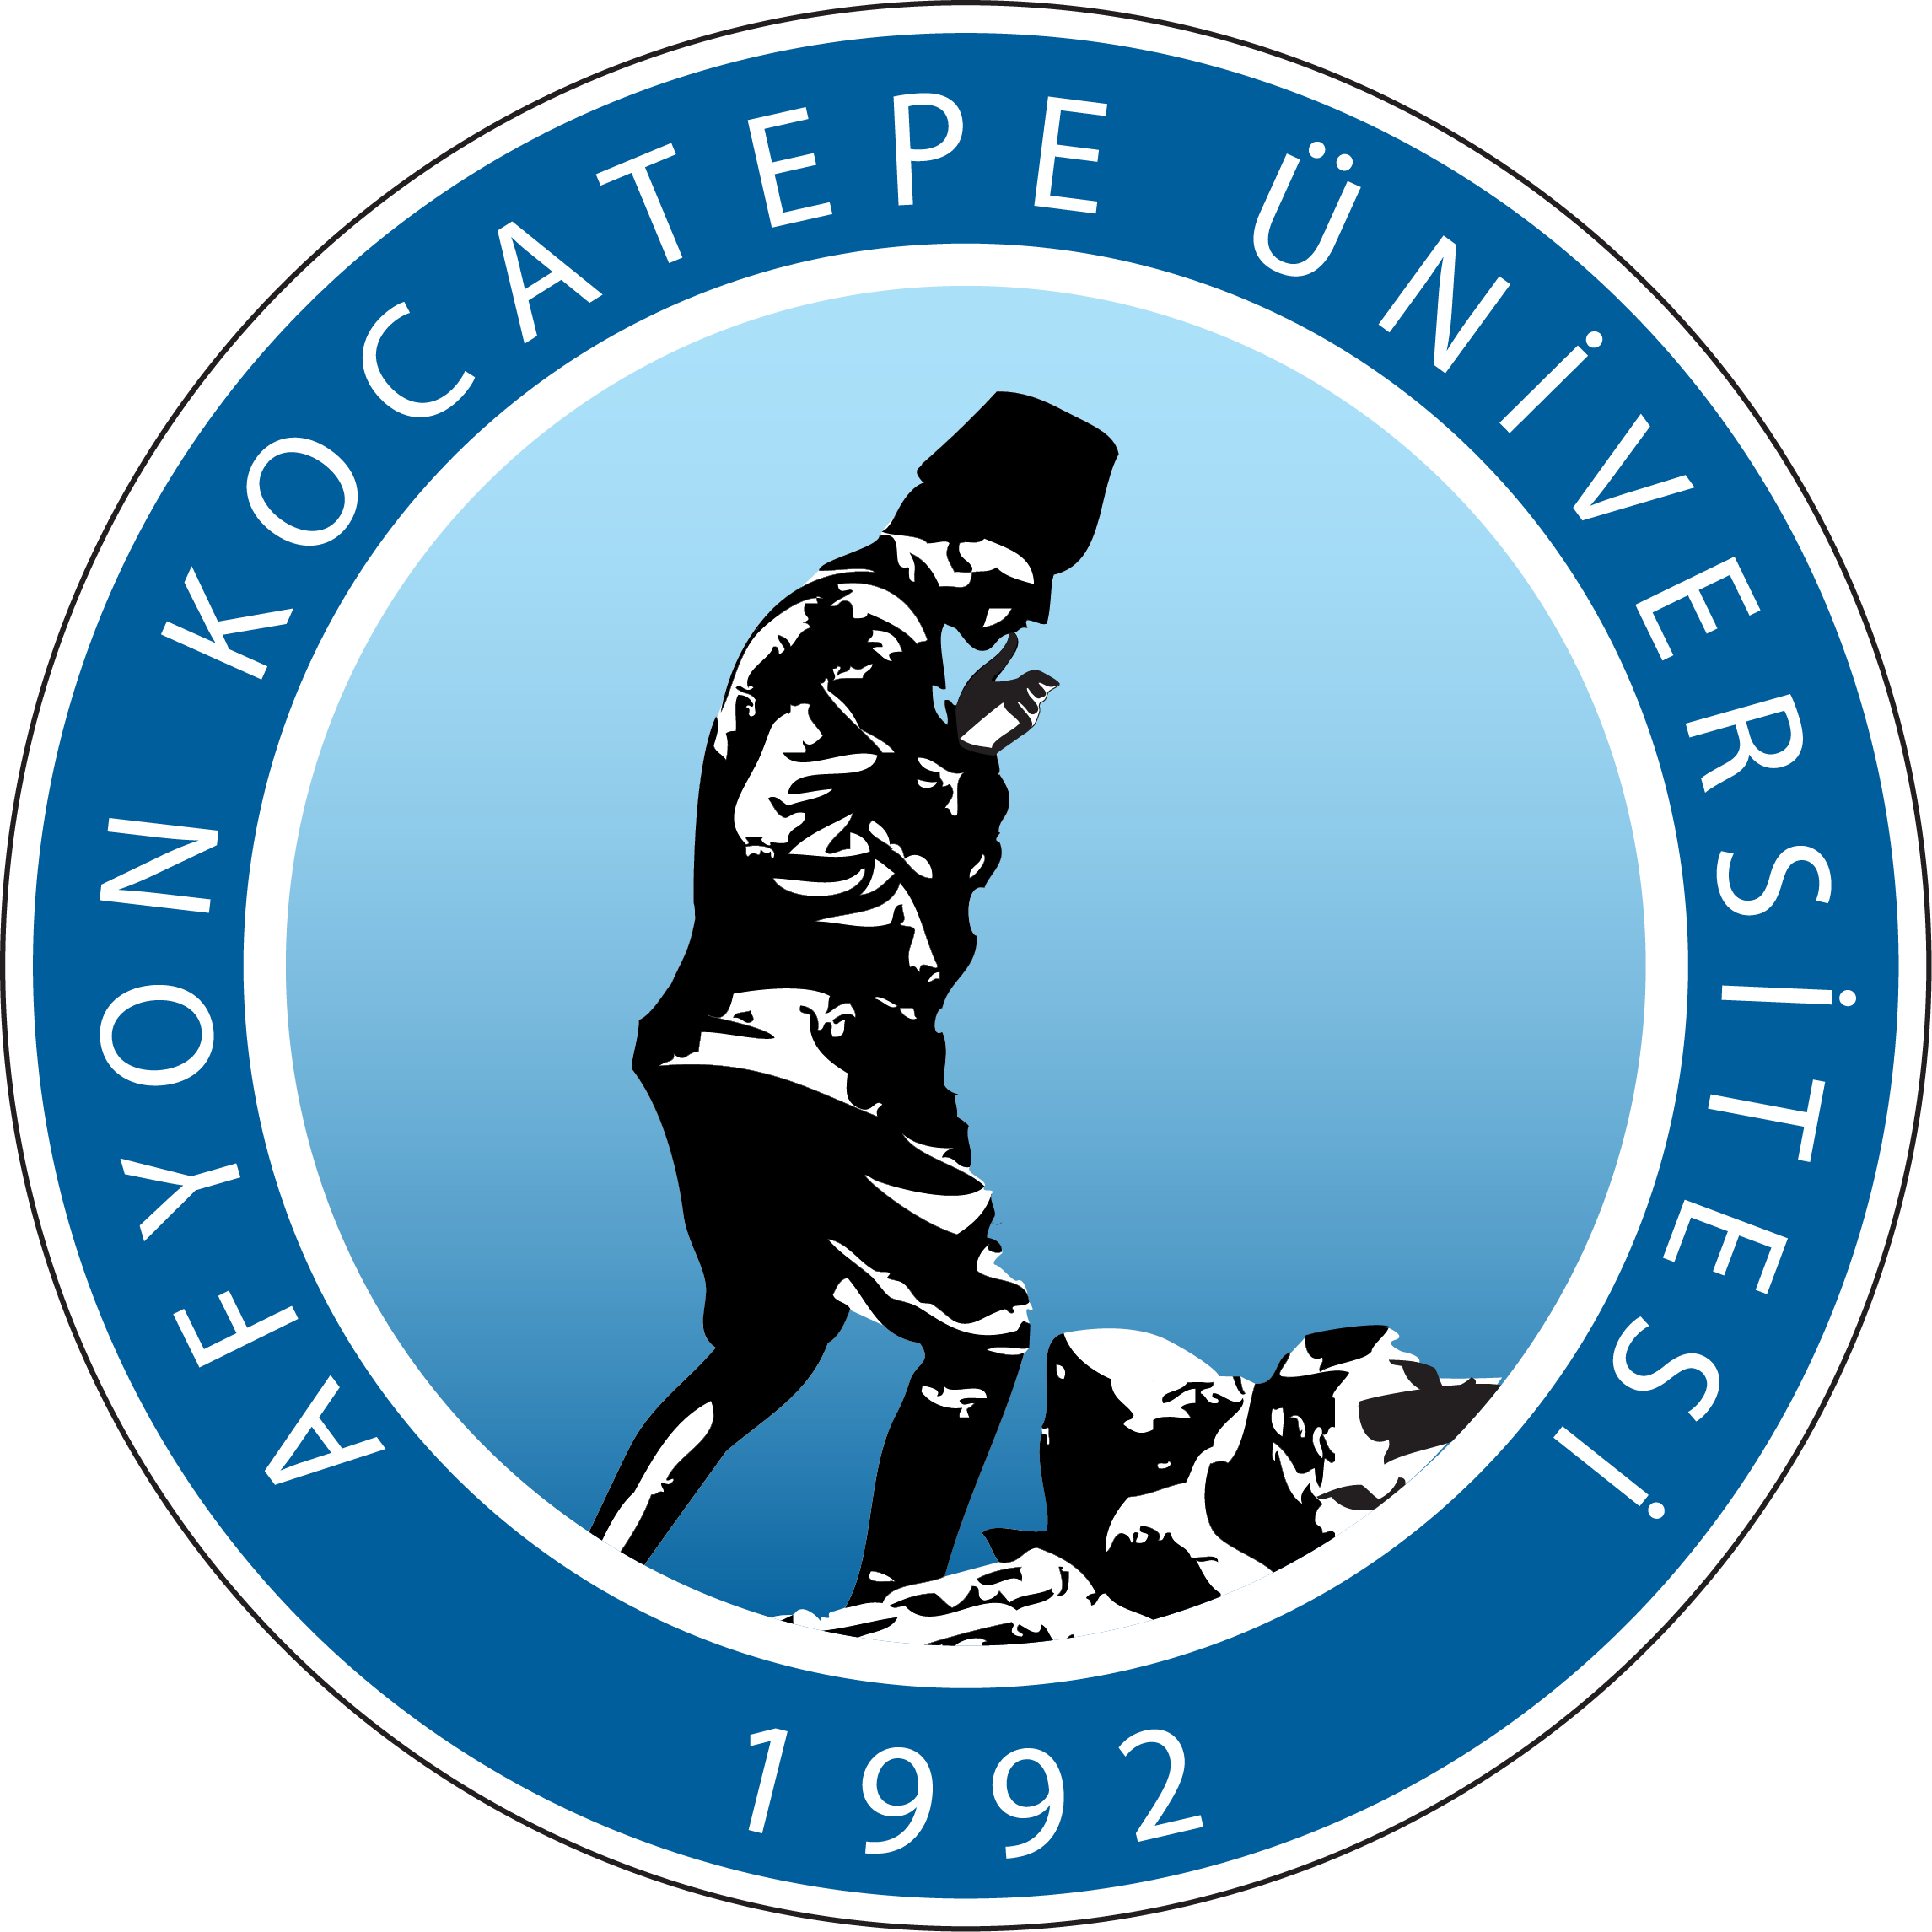 Afyon Kocatepe University